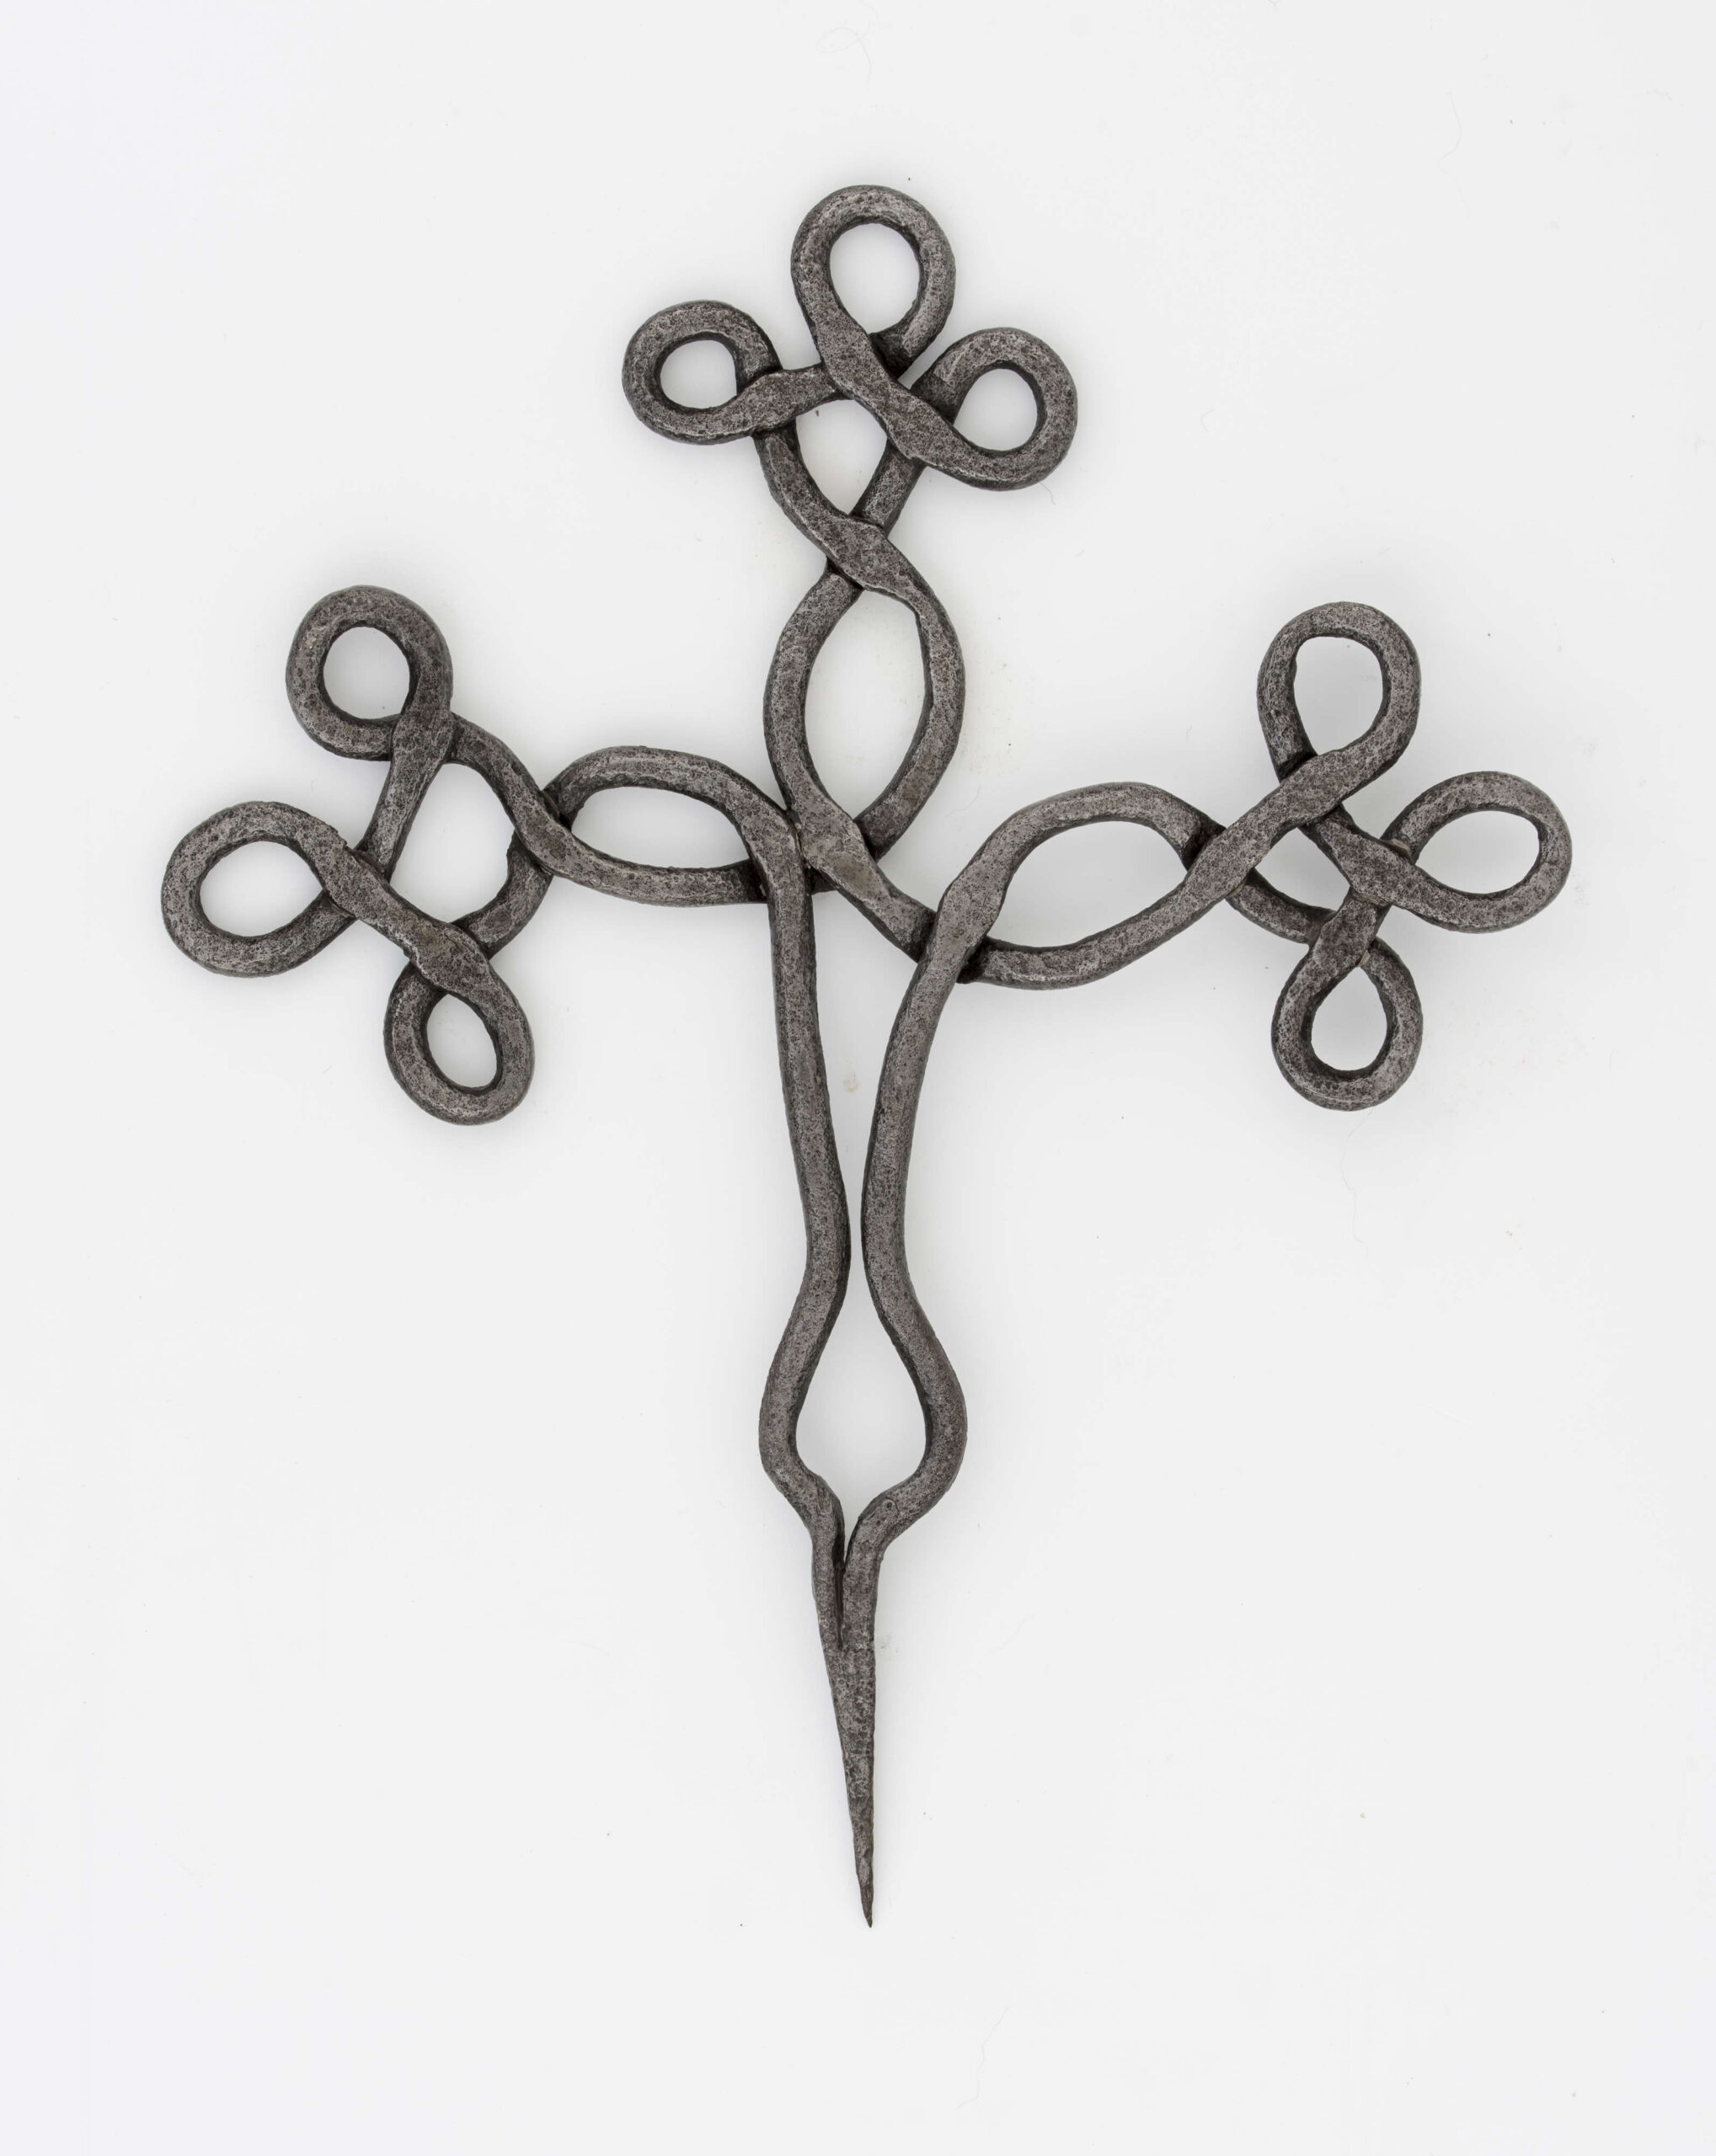 Krzyż żelazny stanowiący zwieńczenie drewnianego krzyża, kowalskiej roboty. Wykonany z pręta o śred. 0,7 cm. Ramiona i wierzchołek krzyża ozdobnie plecione. Szpikulec dł. 6,5 cm.